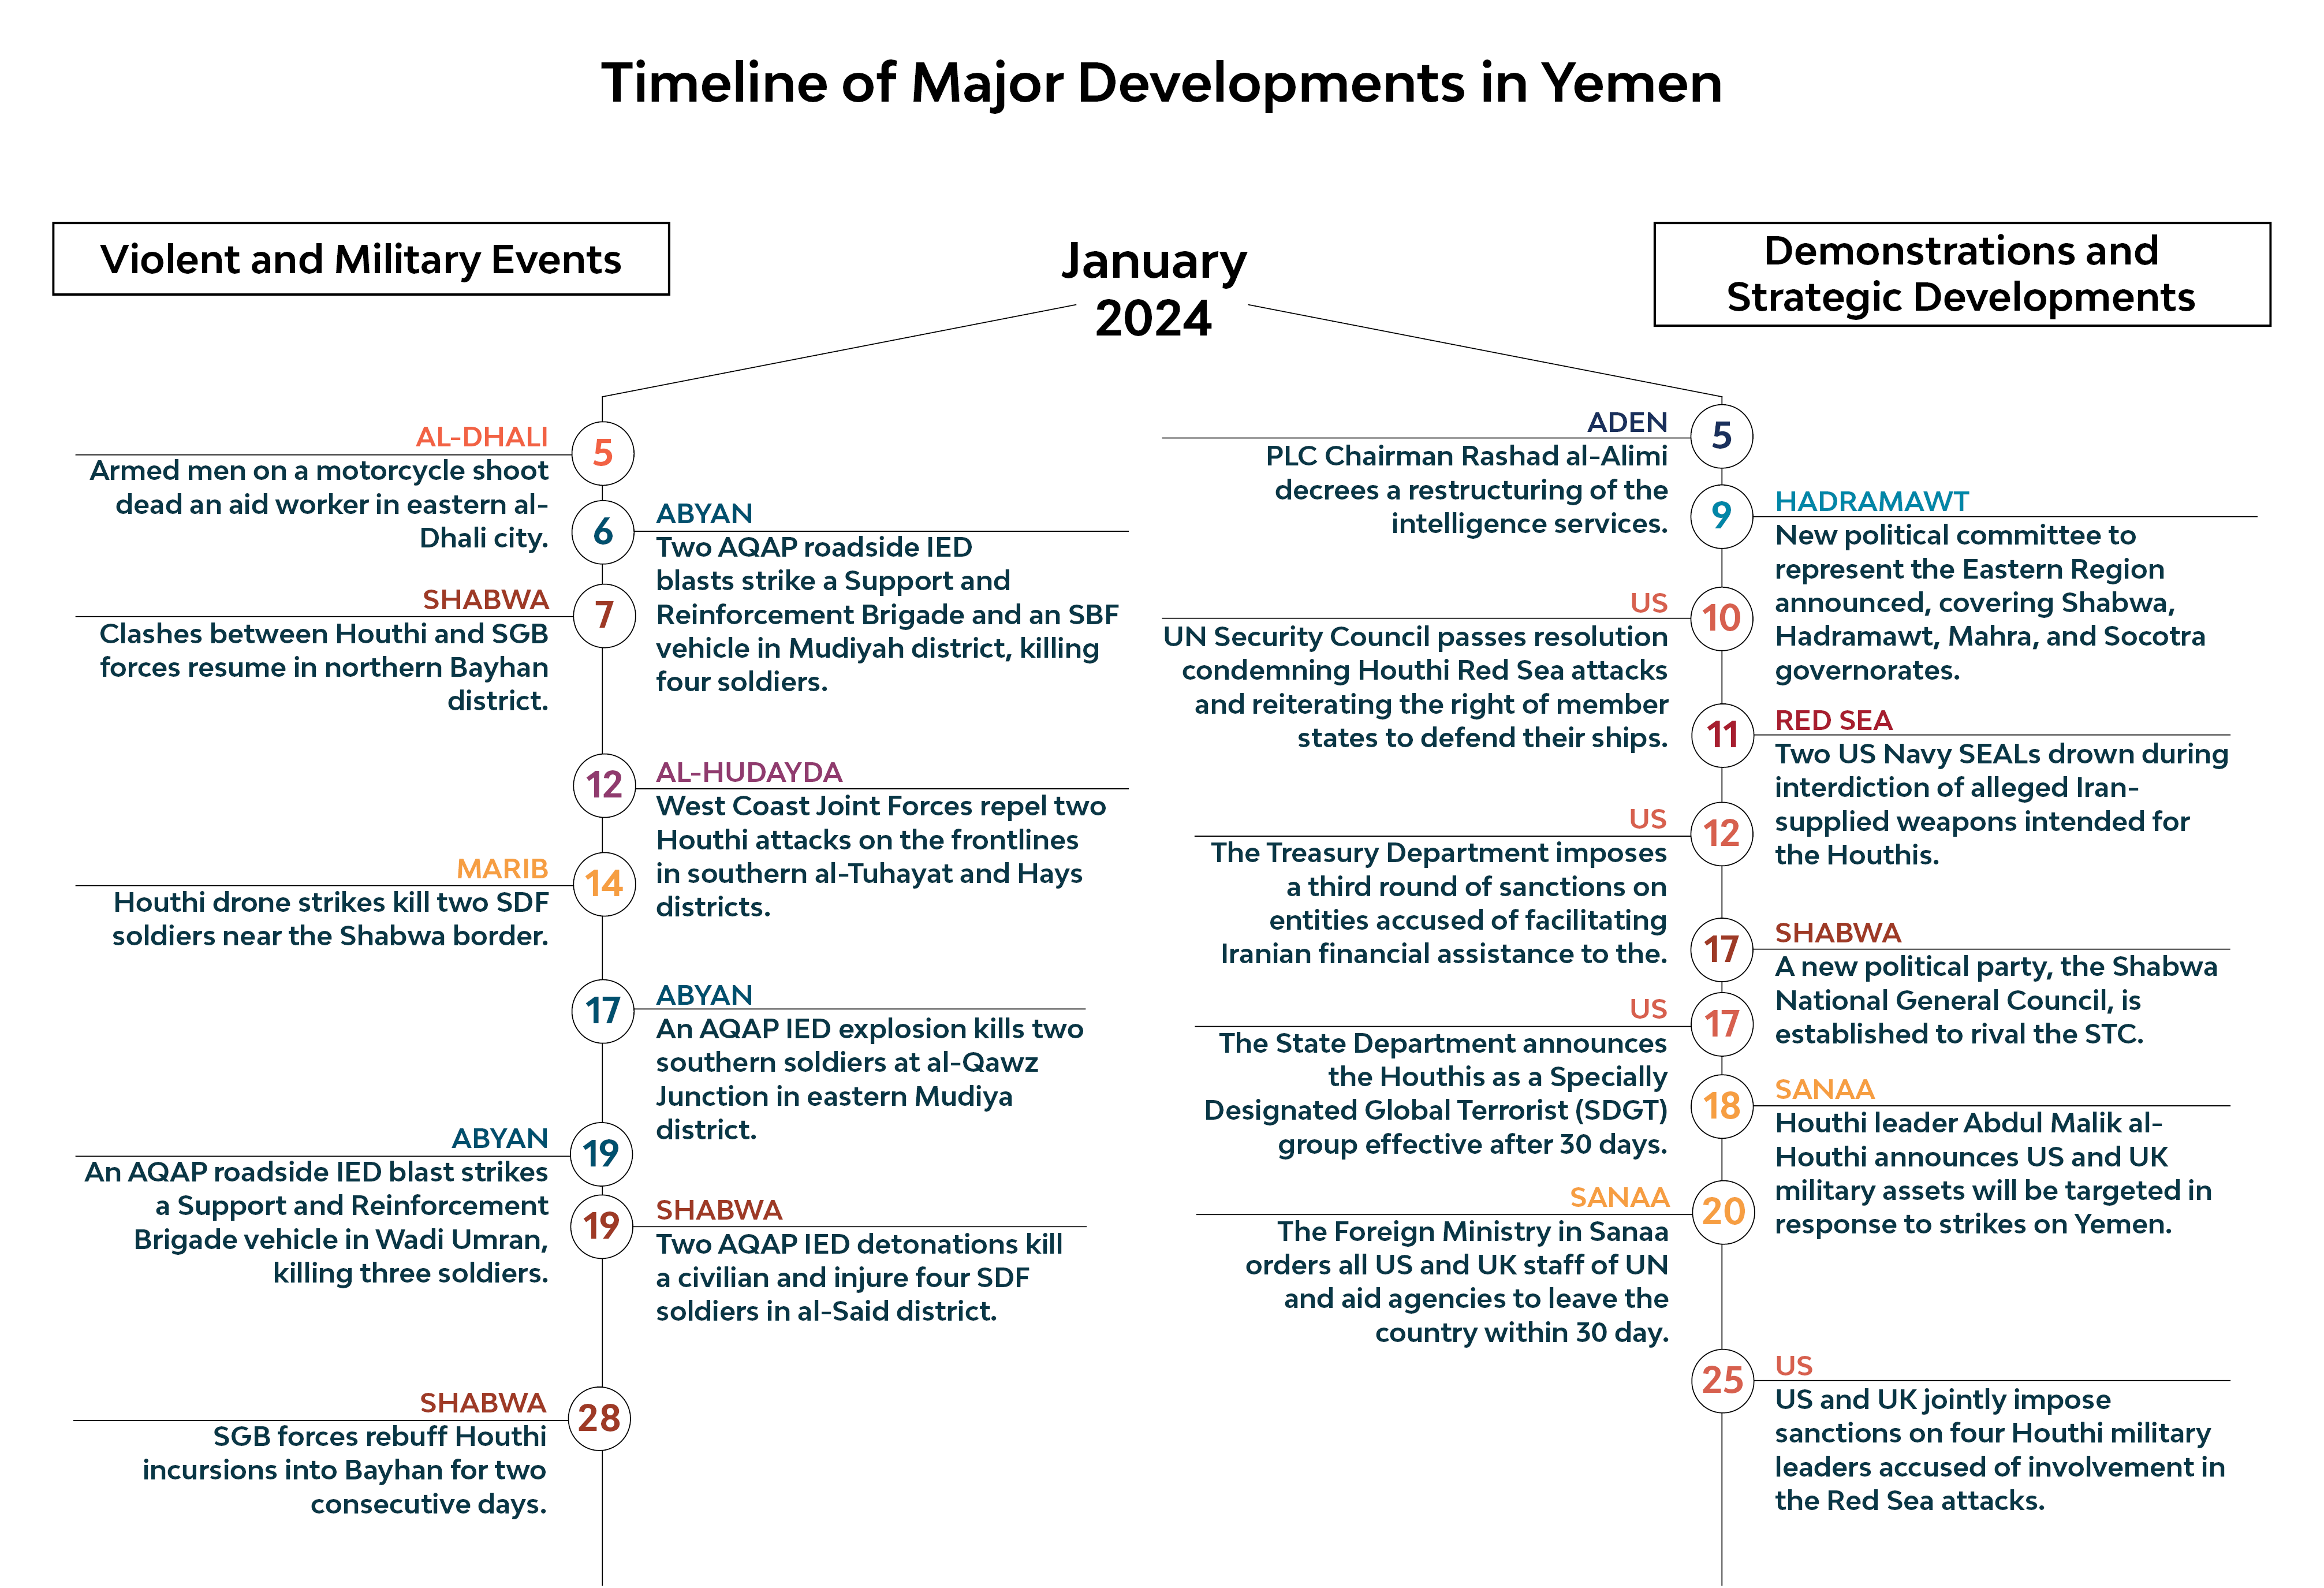 Timeline of major developments in Yemen January 2024